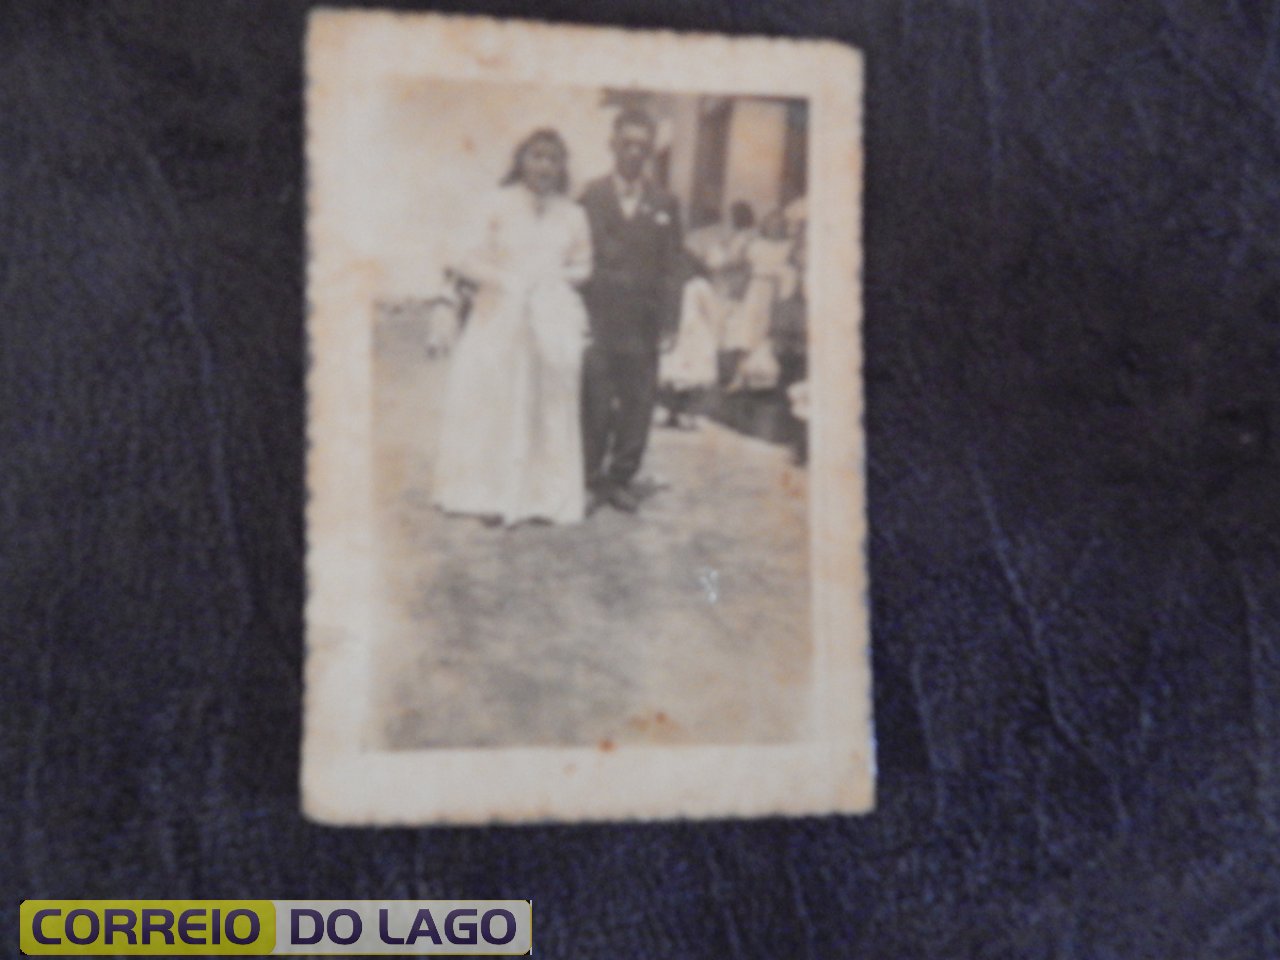 Casamento de Alcides R. Correia com Maria Morreli. Dia 03 de março de 1957 em Mirador. Pais do Professor João Rosa Correia.